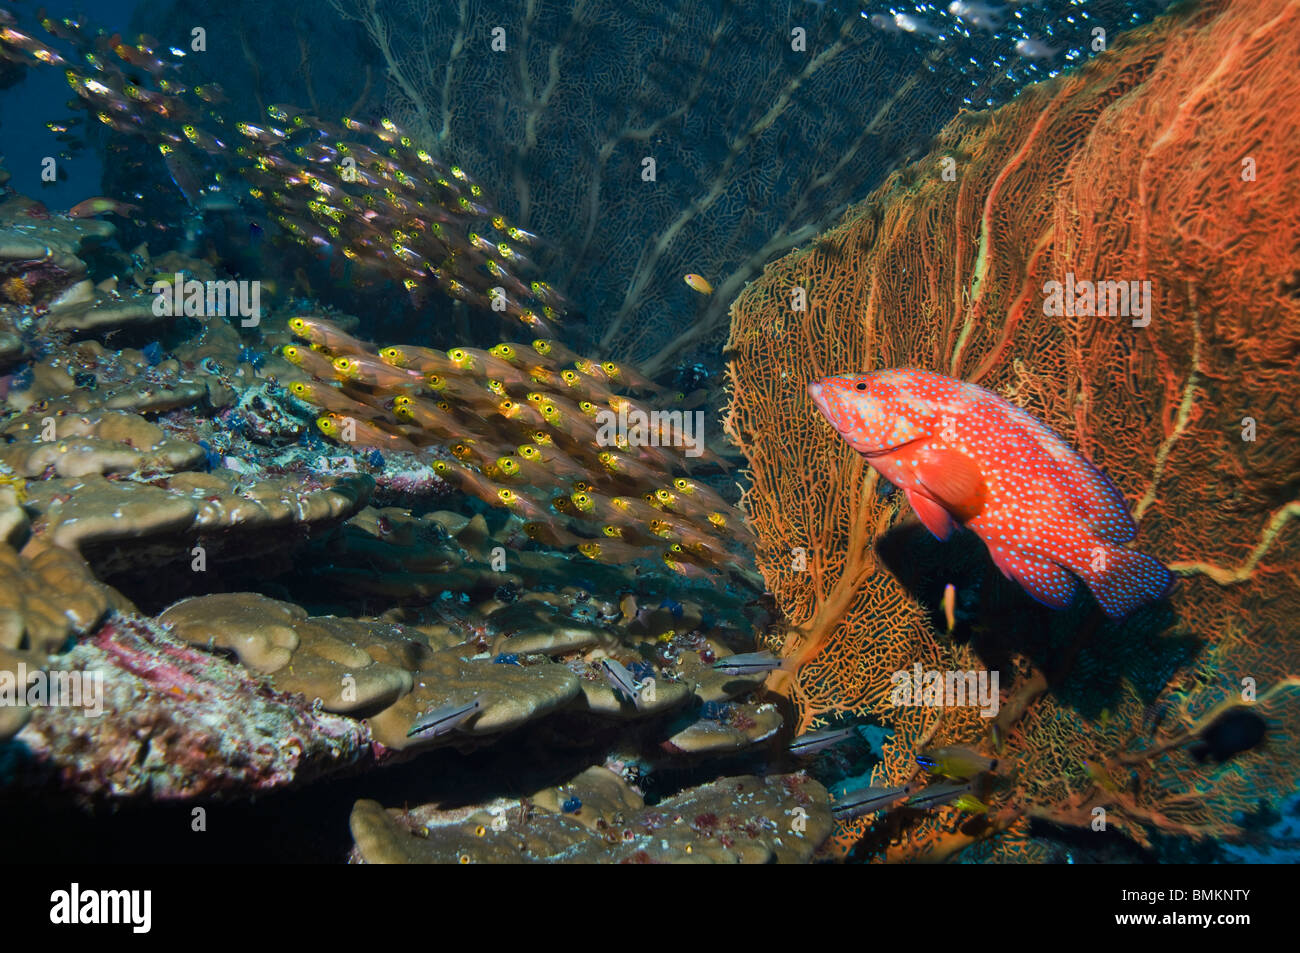 Hind coral con gorgonia, caza pigmeo barredoras sobre los arrecifes de coral. Mar de Andamán, Tailandia. Foto de stock